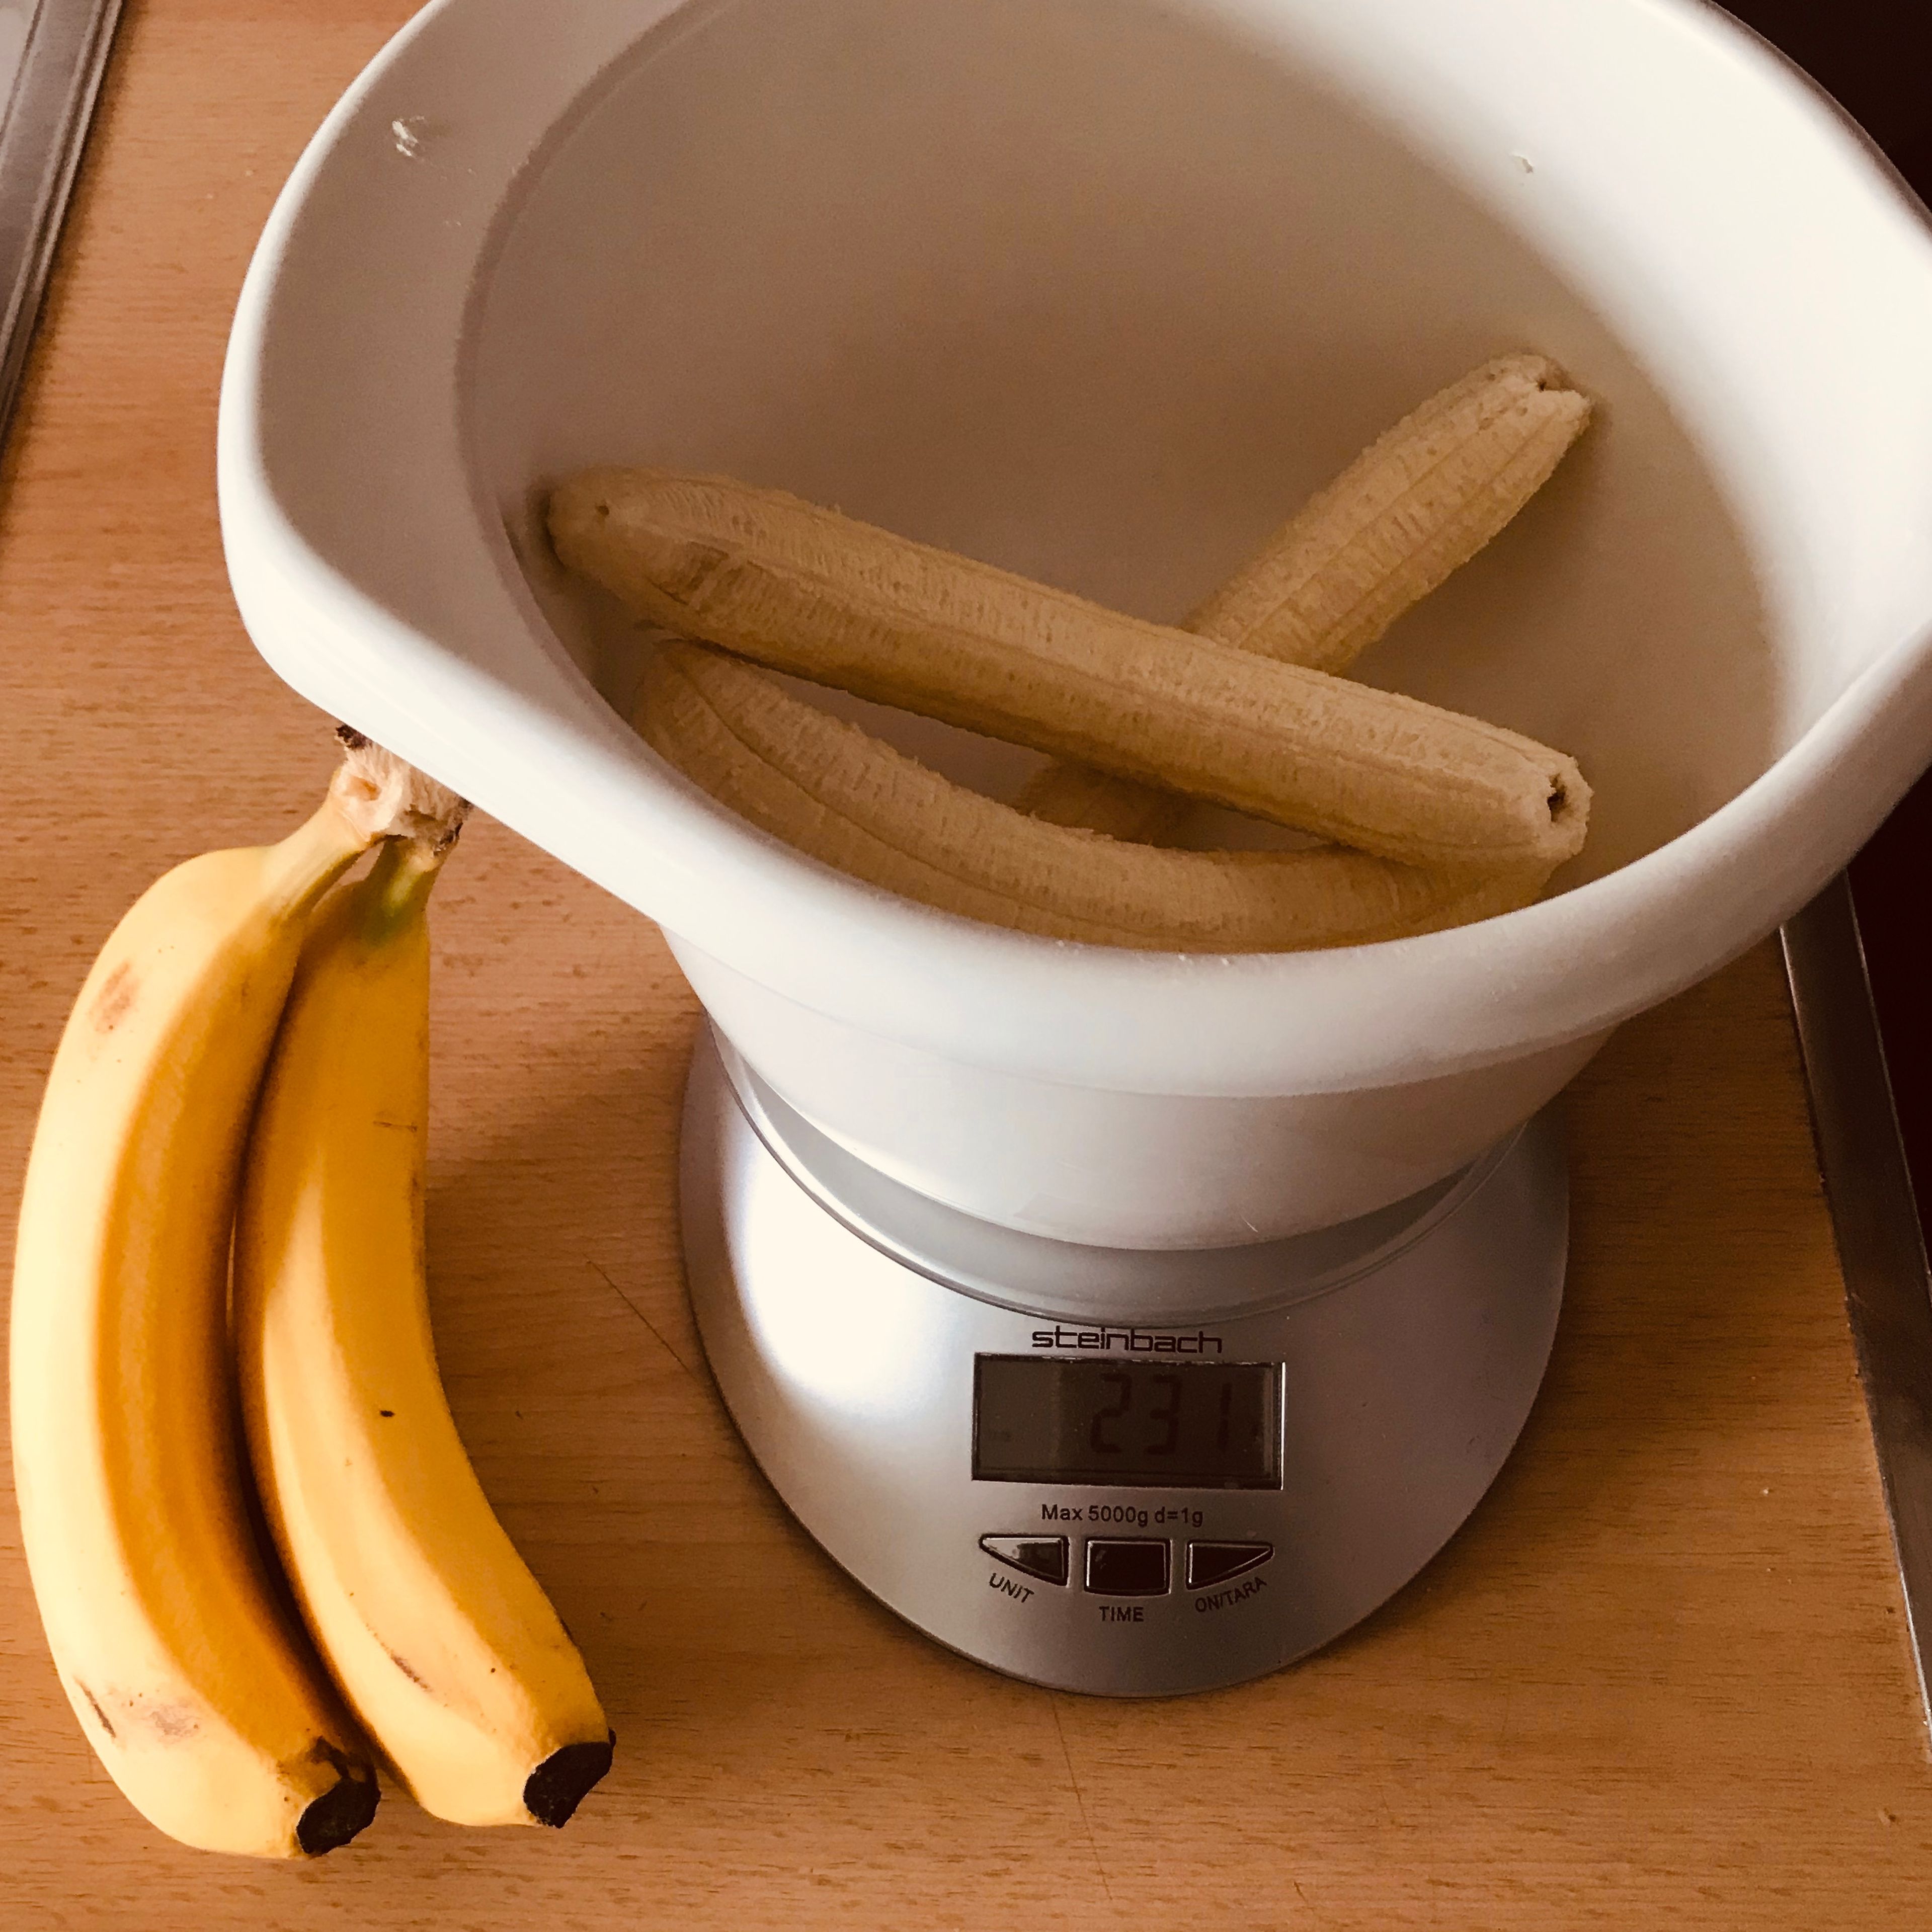 Während die Hefe geht, die Bananen schälen. Danach Öl und Salz hinzugeben und zu einem einheitlichen Brei pürieren.